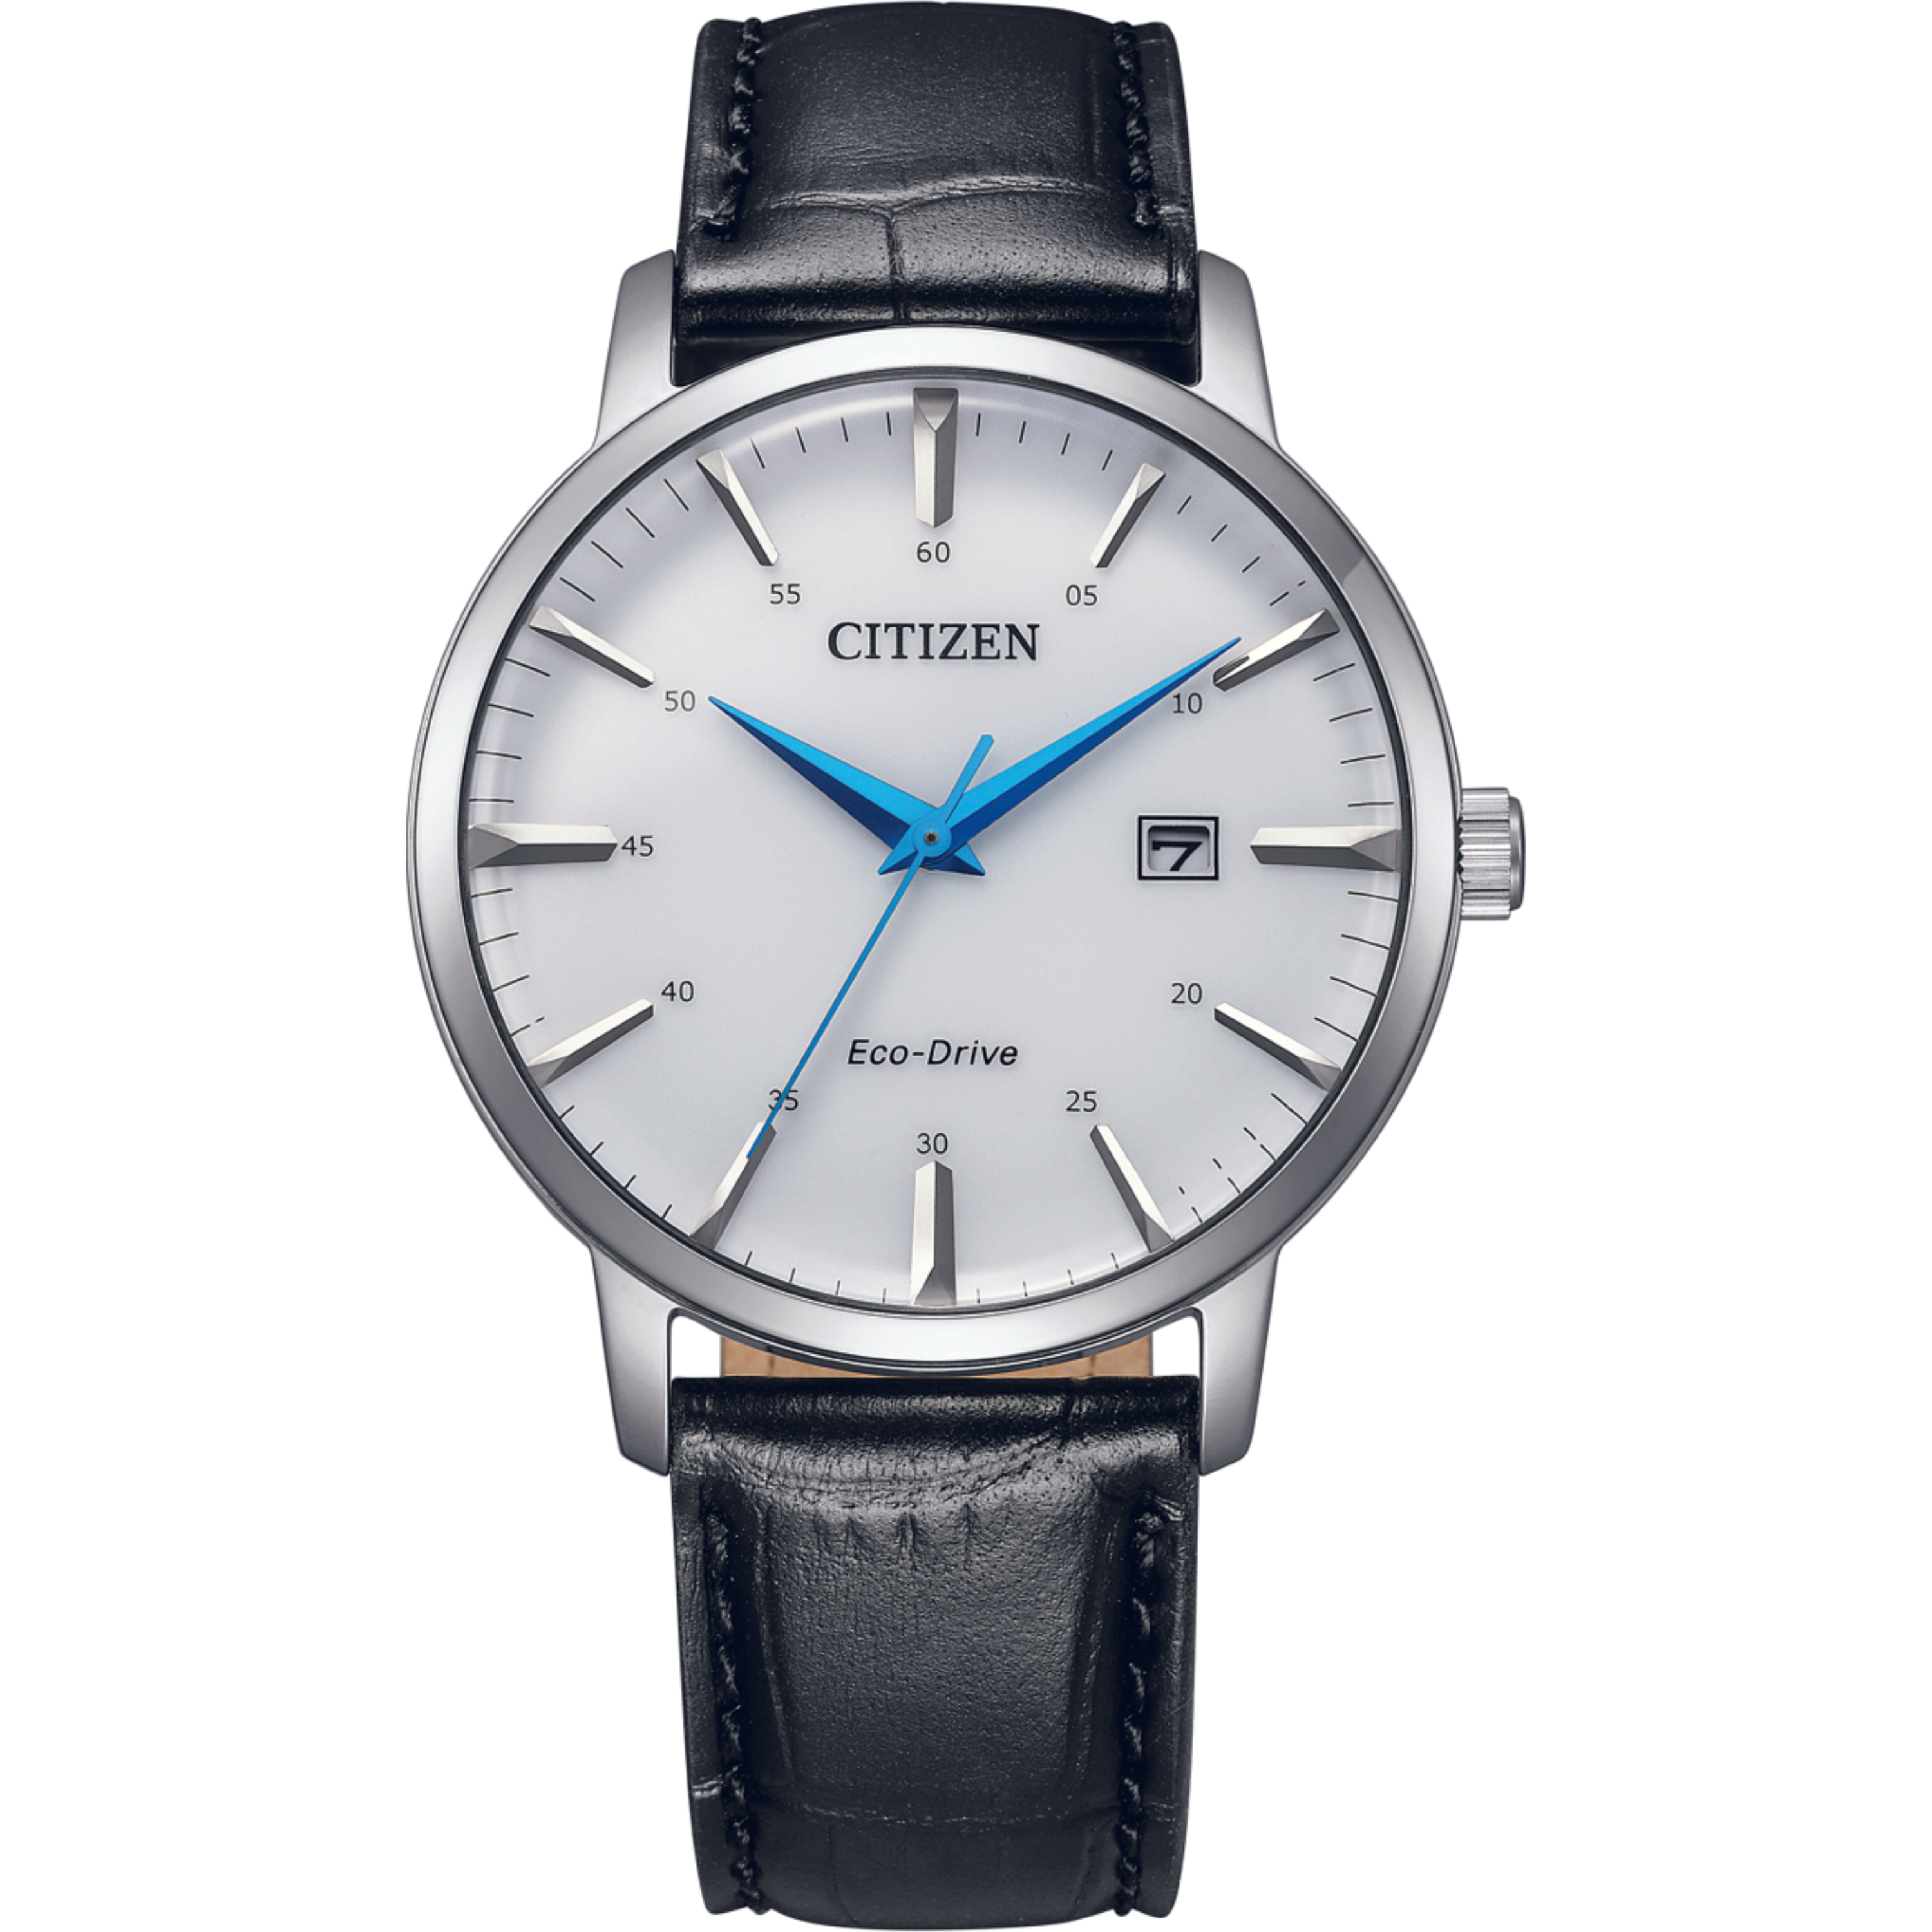 שעון יד לגבר מנגנון אקו דרייב Citizen BM7461-18A 40mm - צבע כסף/עור שחור אחריות לשנה ע"י היבואן